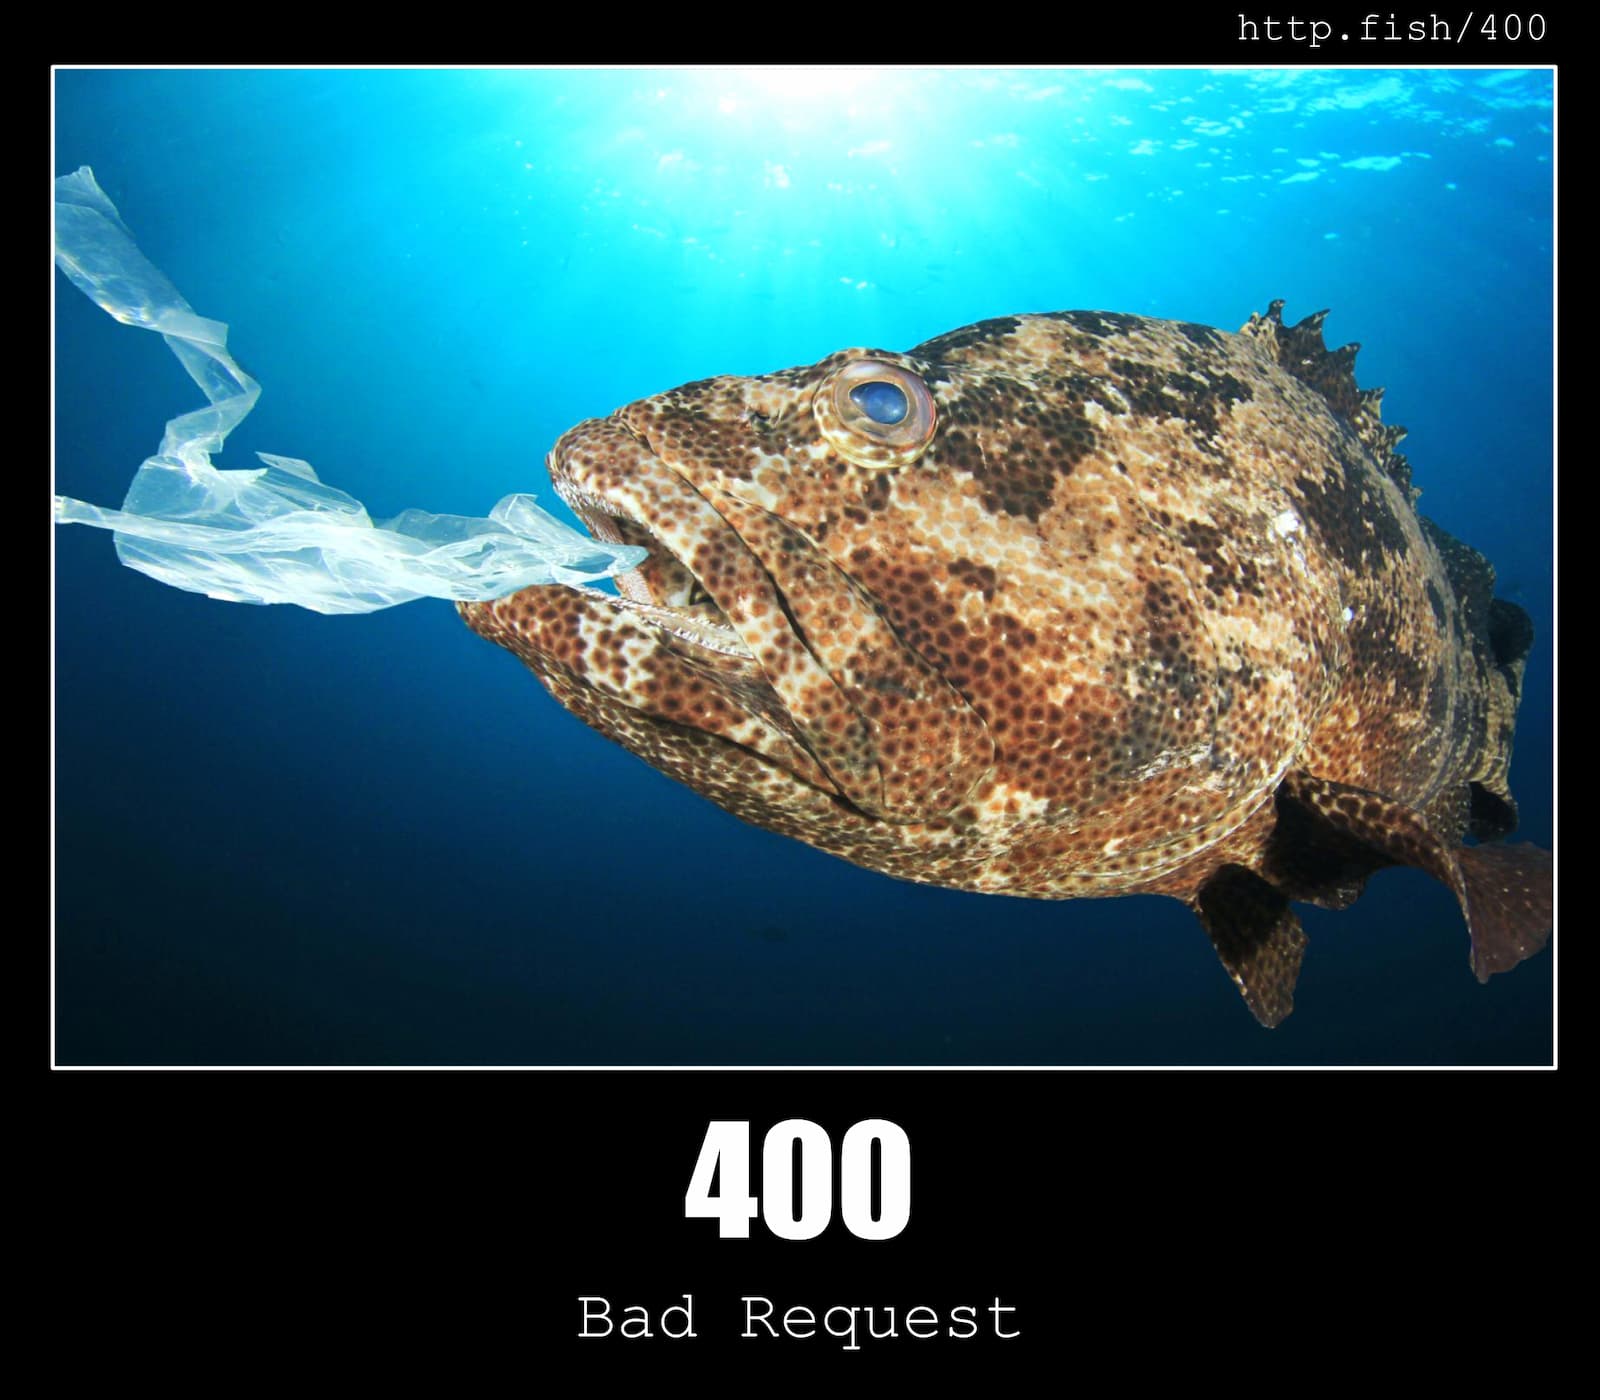 HTTP Status Code 400 Bad Request & Fish